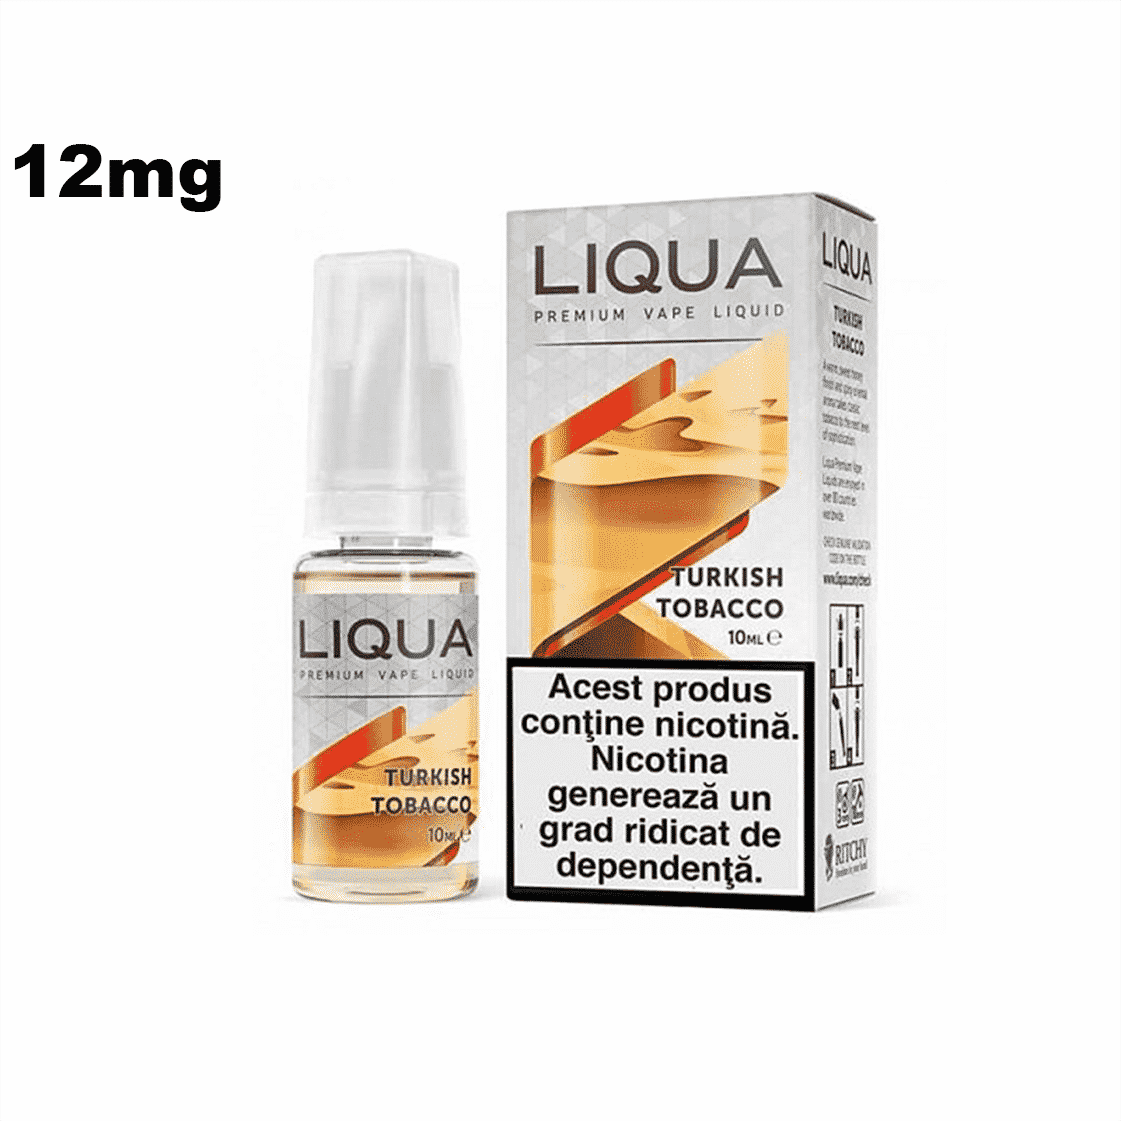 Lichid cu nicotina LIQUA Turkish Tobacco 12mg 10ml